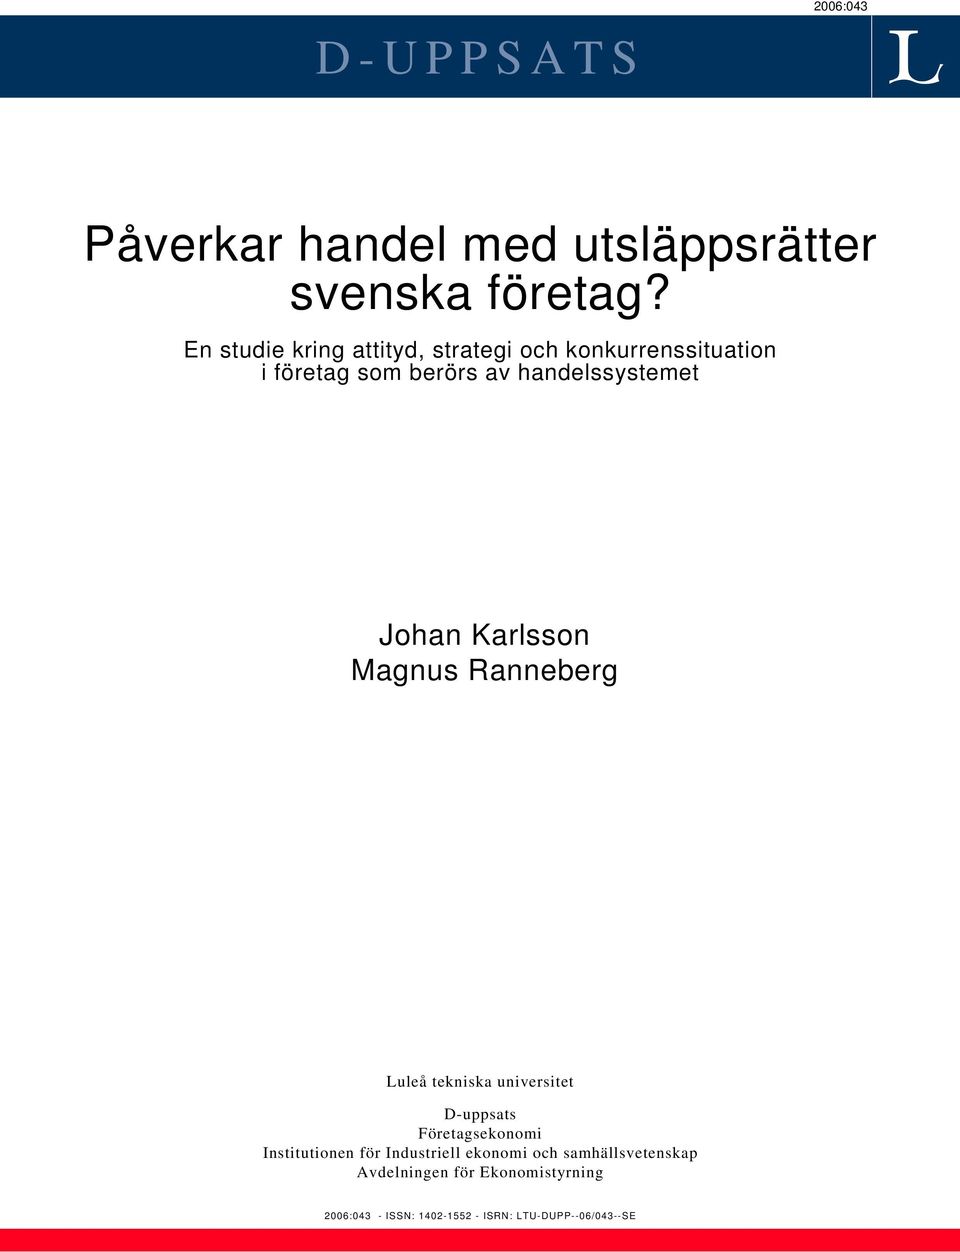 Johan Karlsson Magnus Ranneberg Luleå tekniska universitet D-uppsats Företagsekonomi Institutionen